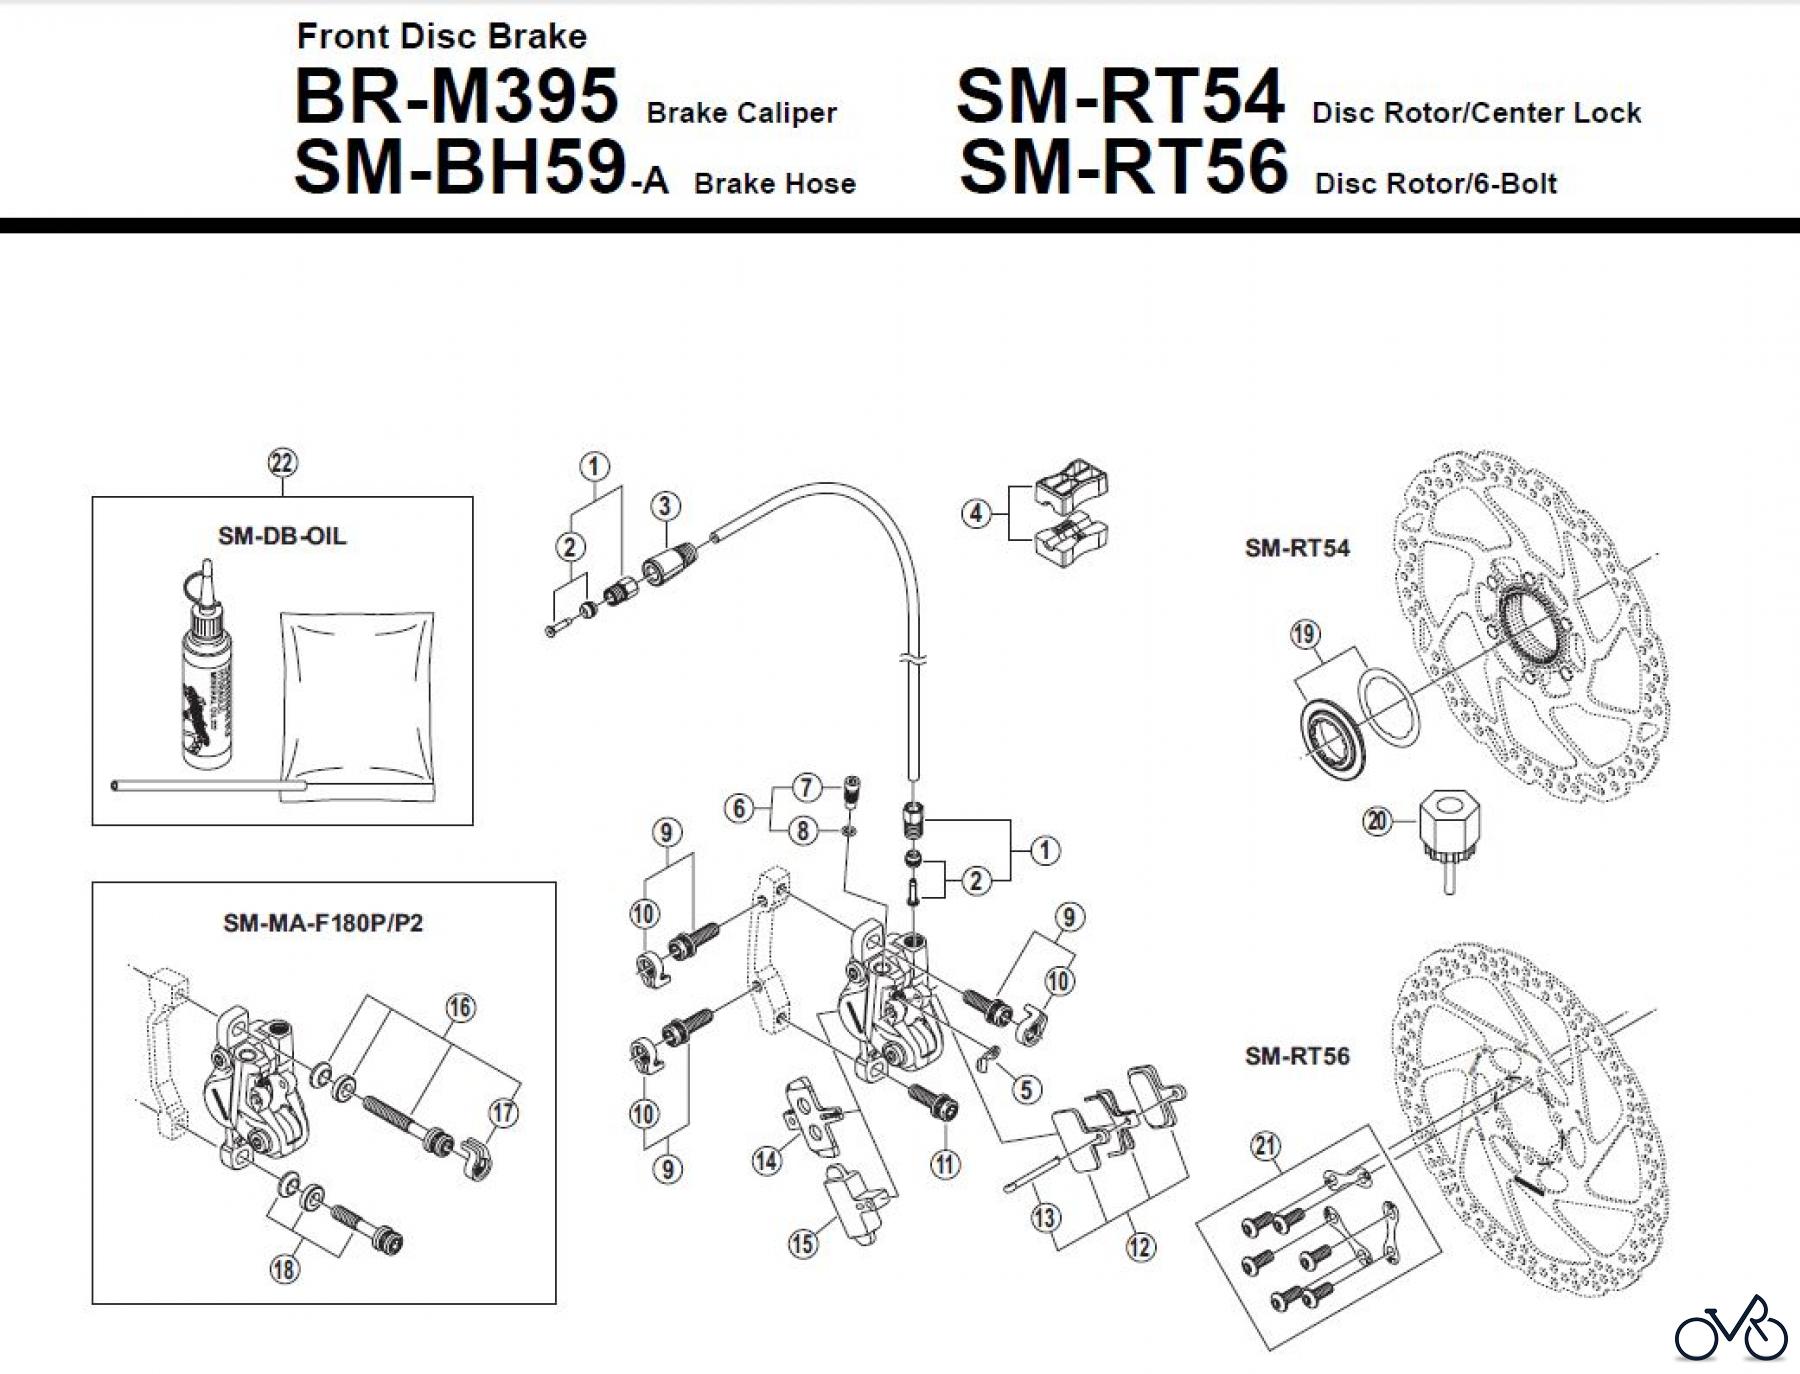  Shimano BR Brake - Bremse BR-M395 -F- 3356 Front Disc Brake